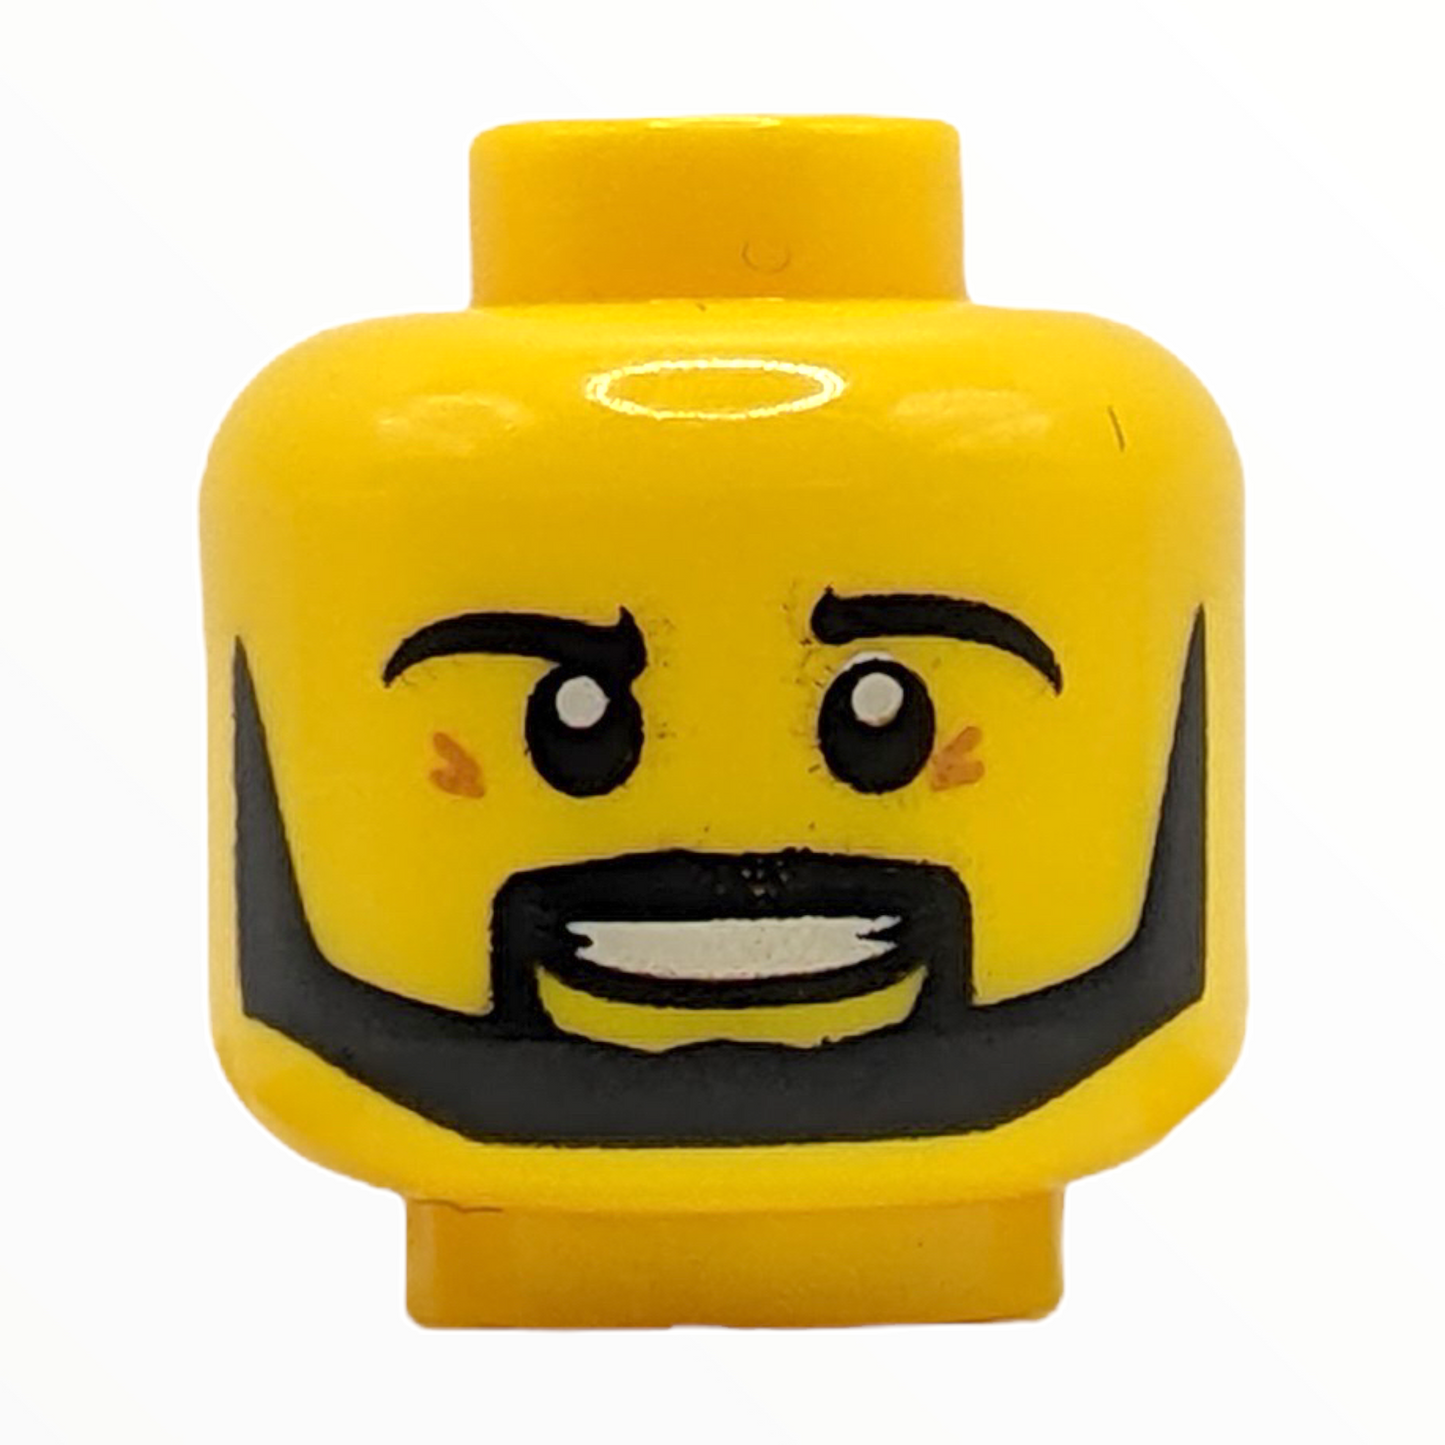 LEGO Head - 0012 Beard Black Angular Pupils Teeth